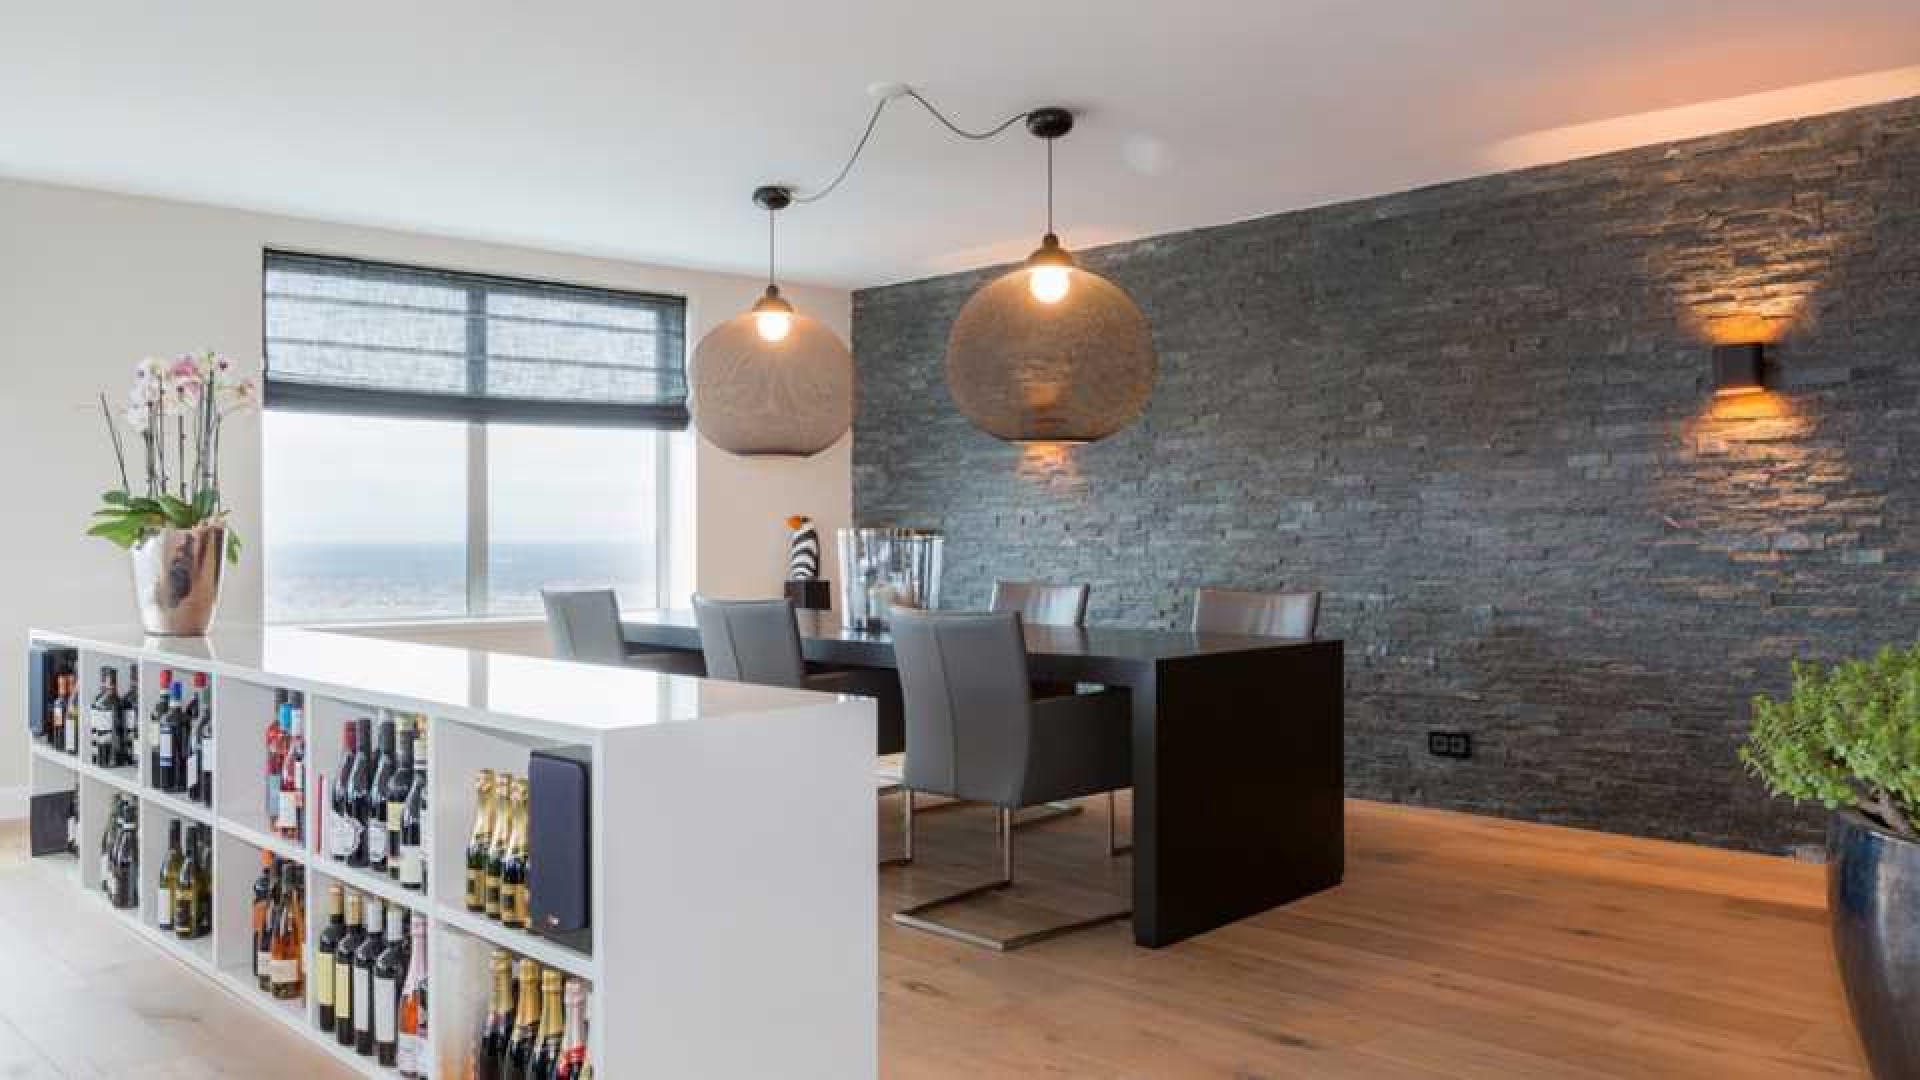 Amanda Krabbe en haar man Harrie Kolen zetten hun luxe penthouse in stille verkoop. Zie foto's 8